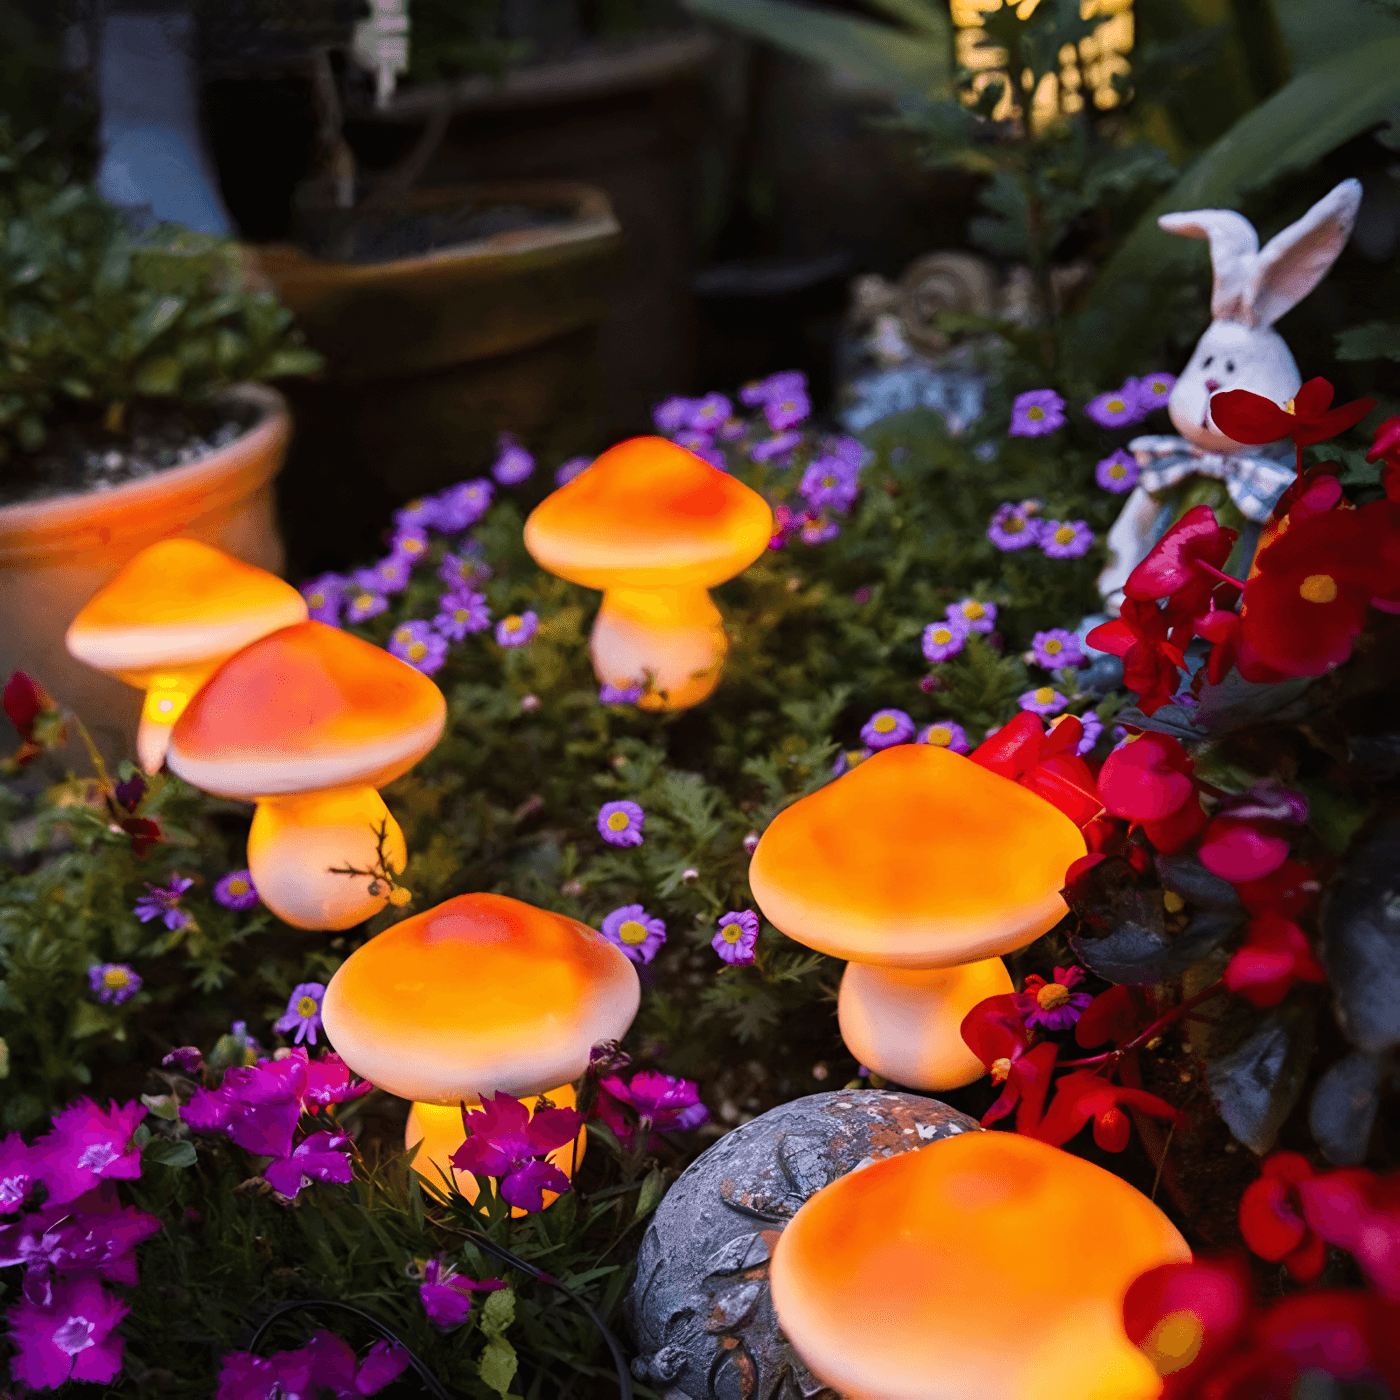 Outdoor mushroom lights